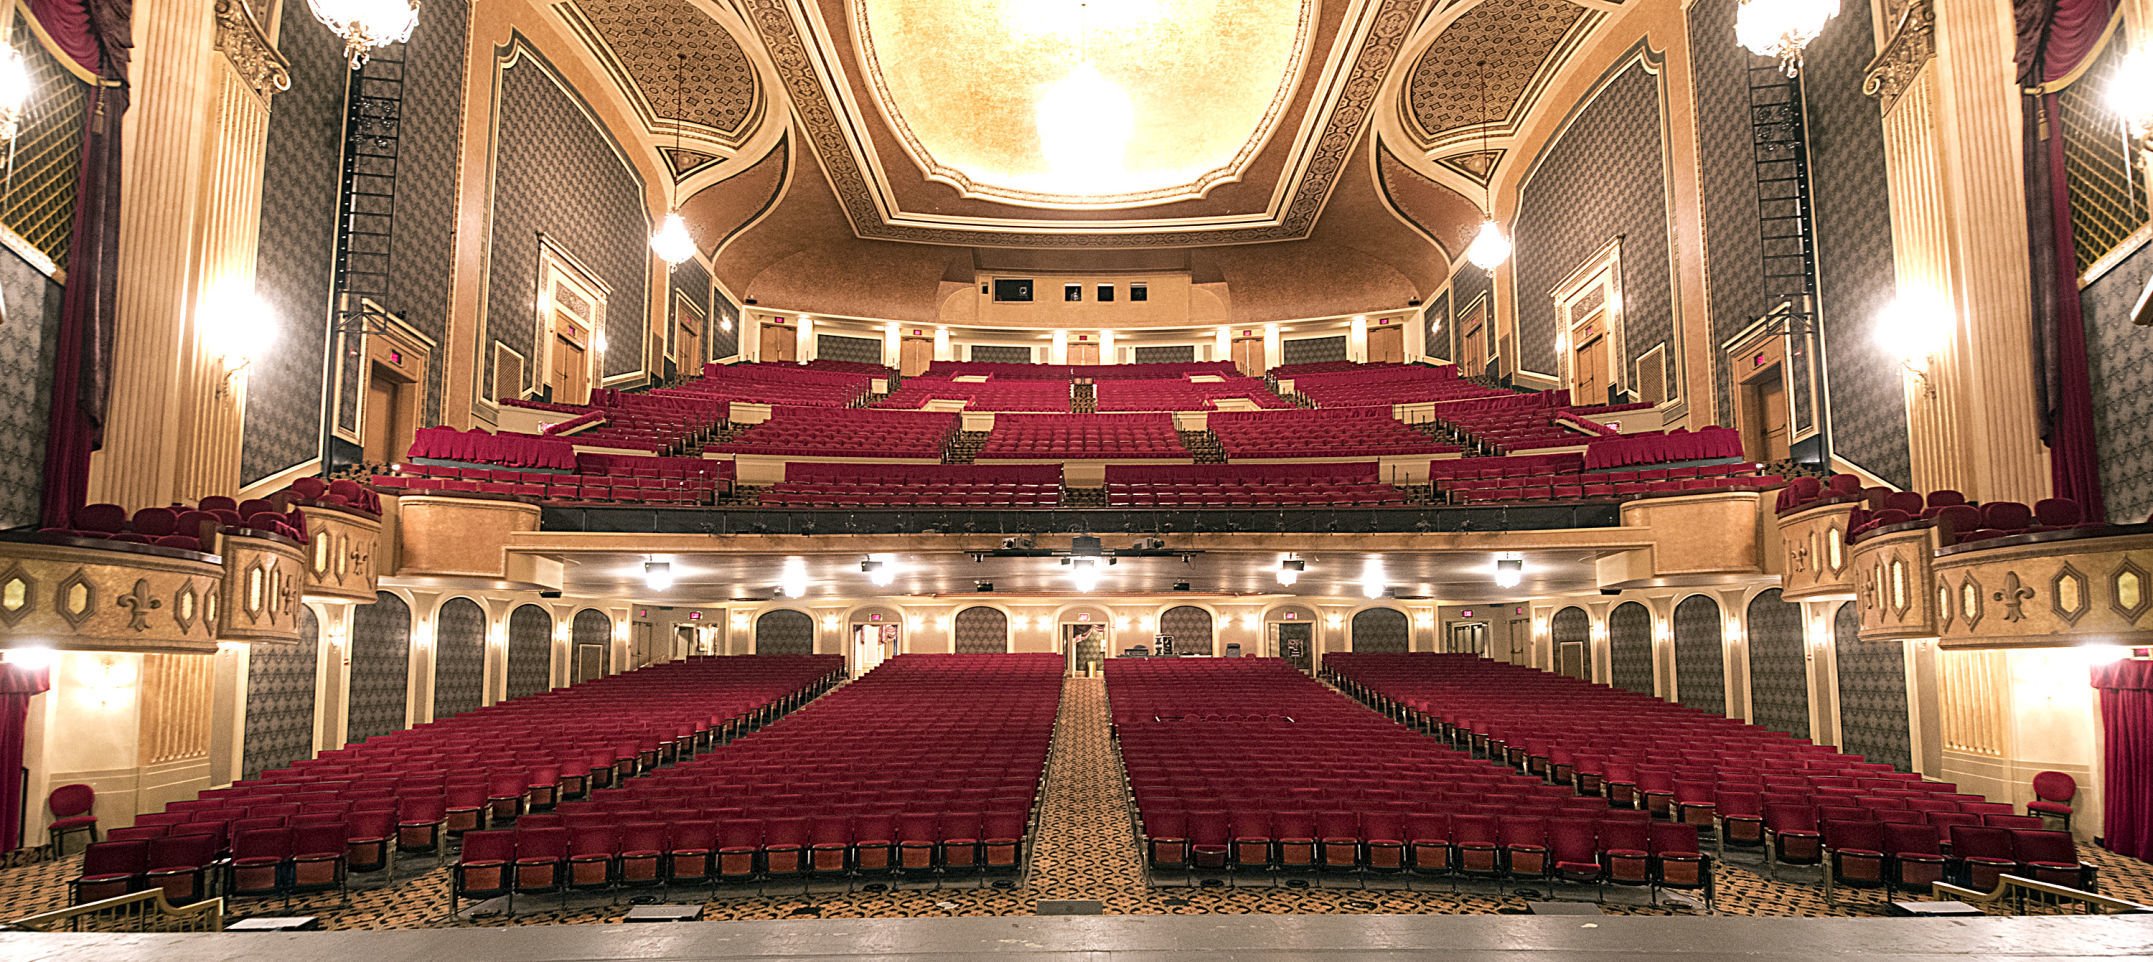 boston opera house seating chart